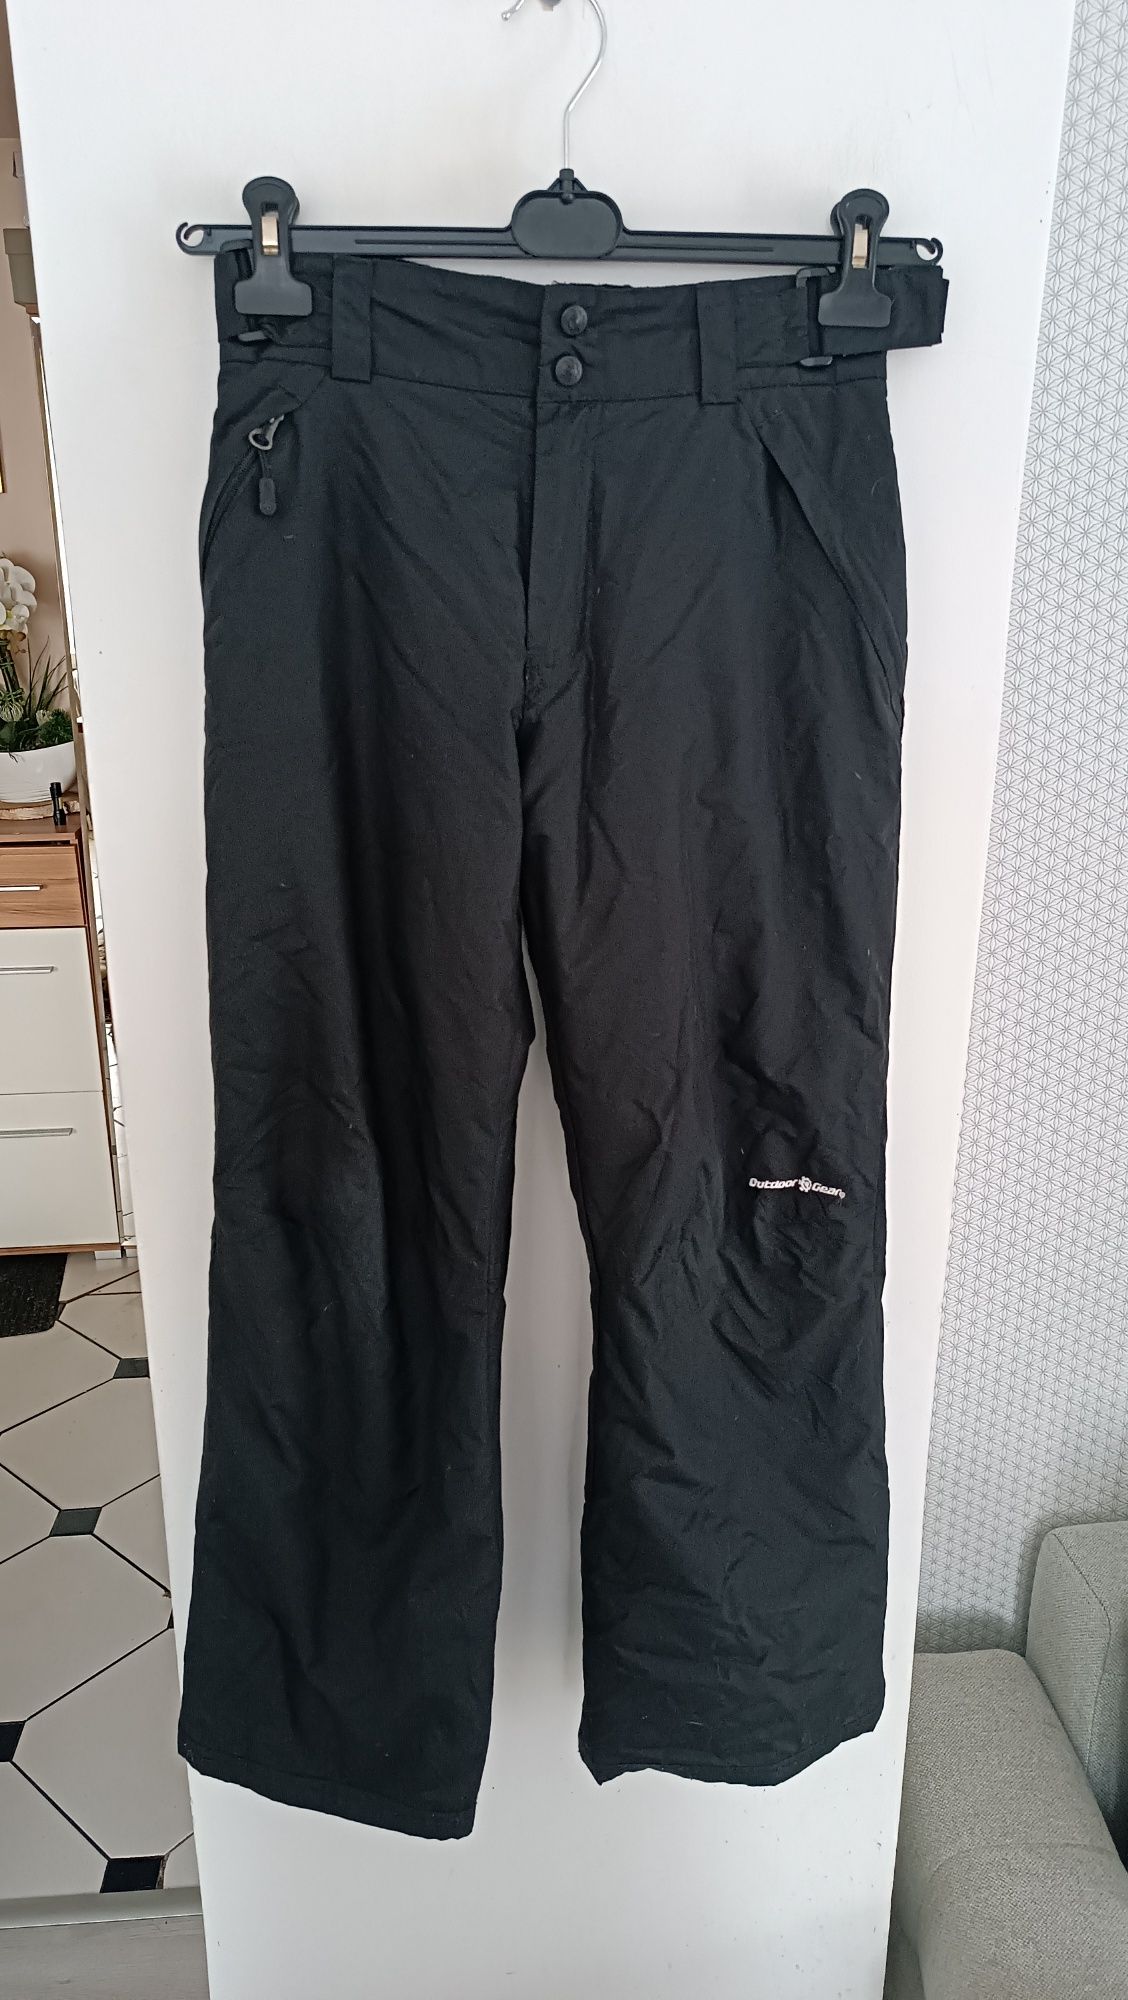 Spodnie narciarskie Qutdoor&Gear roz 12/14 lat